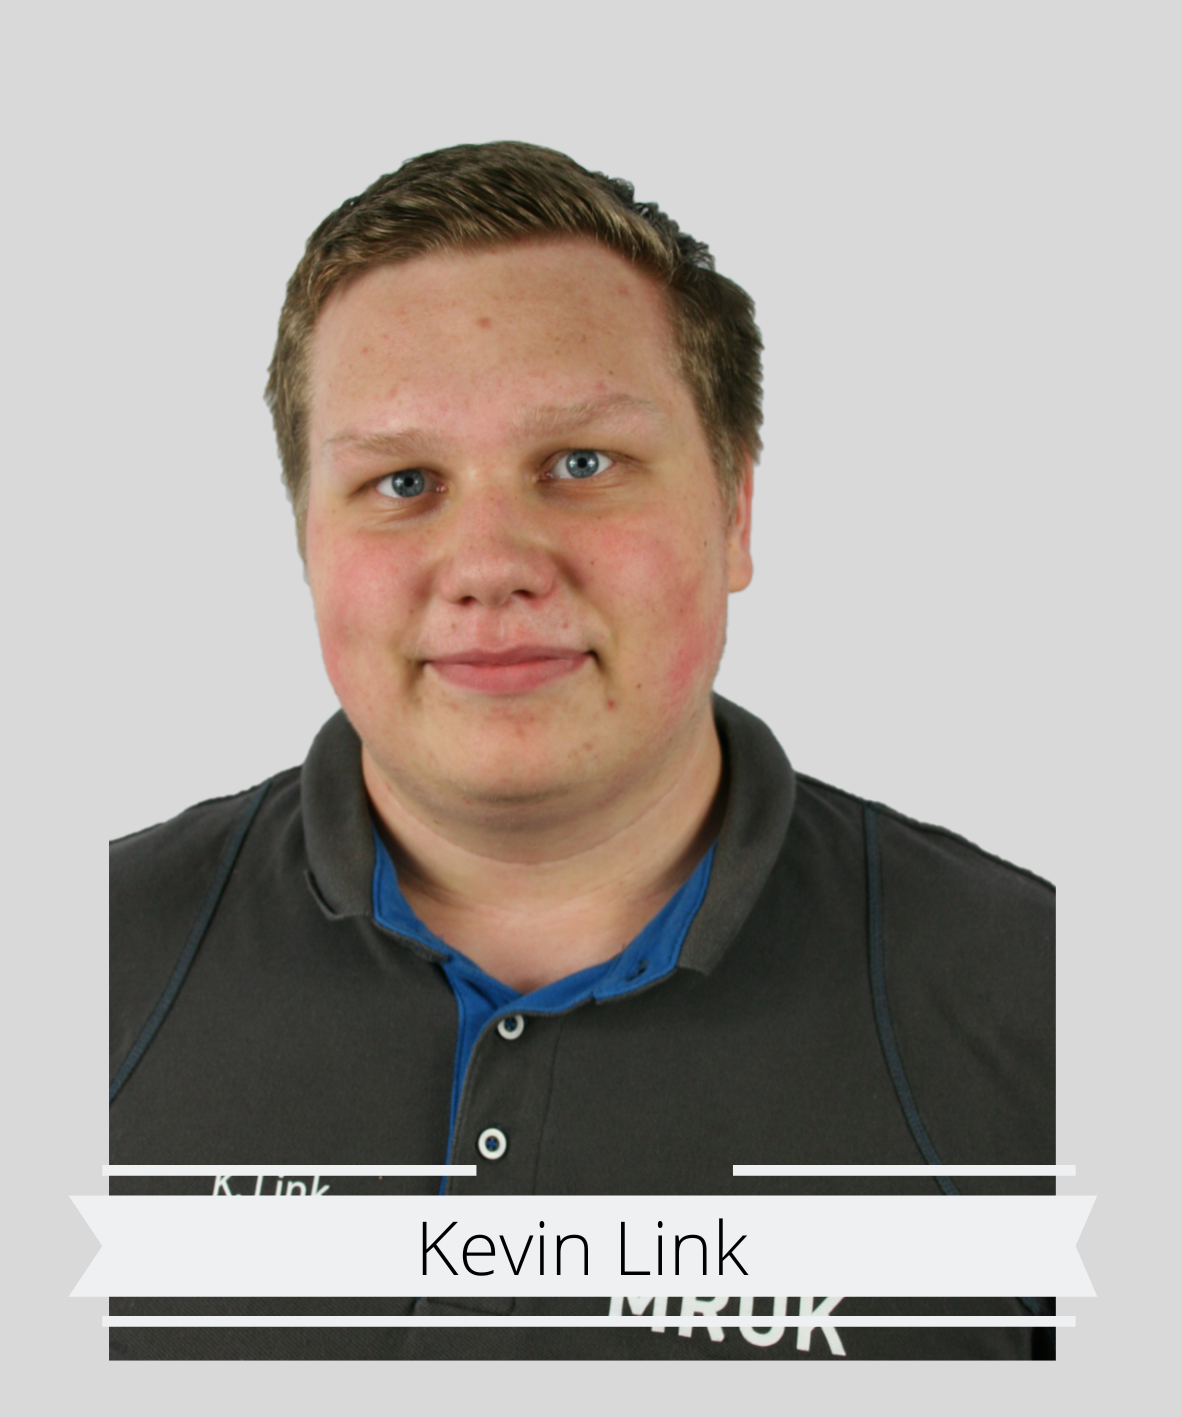 Kevin Link